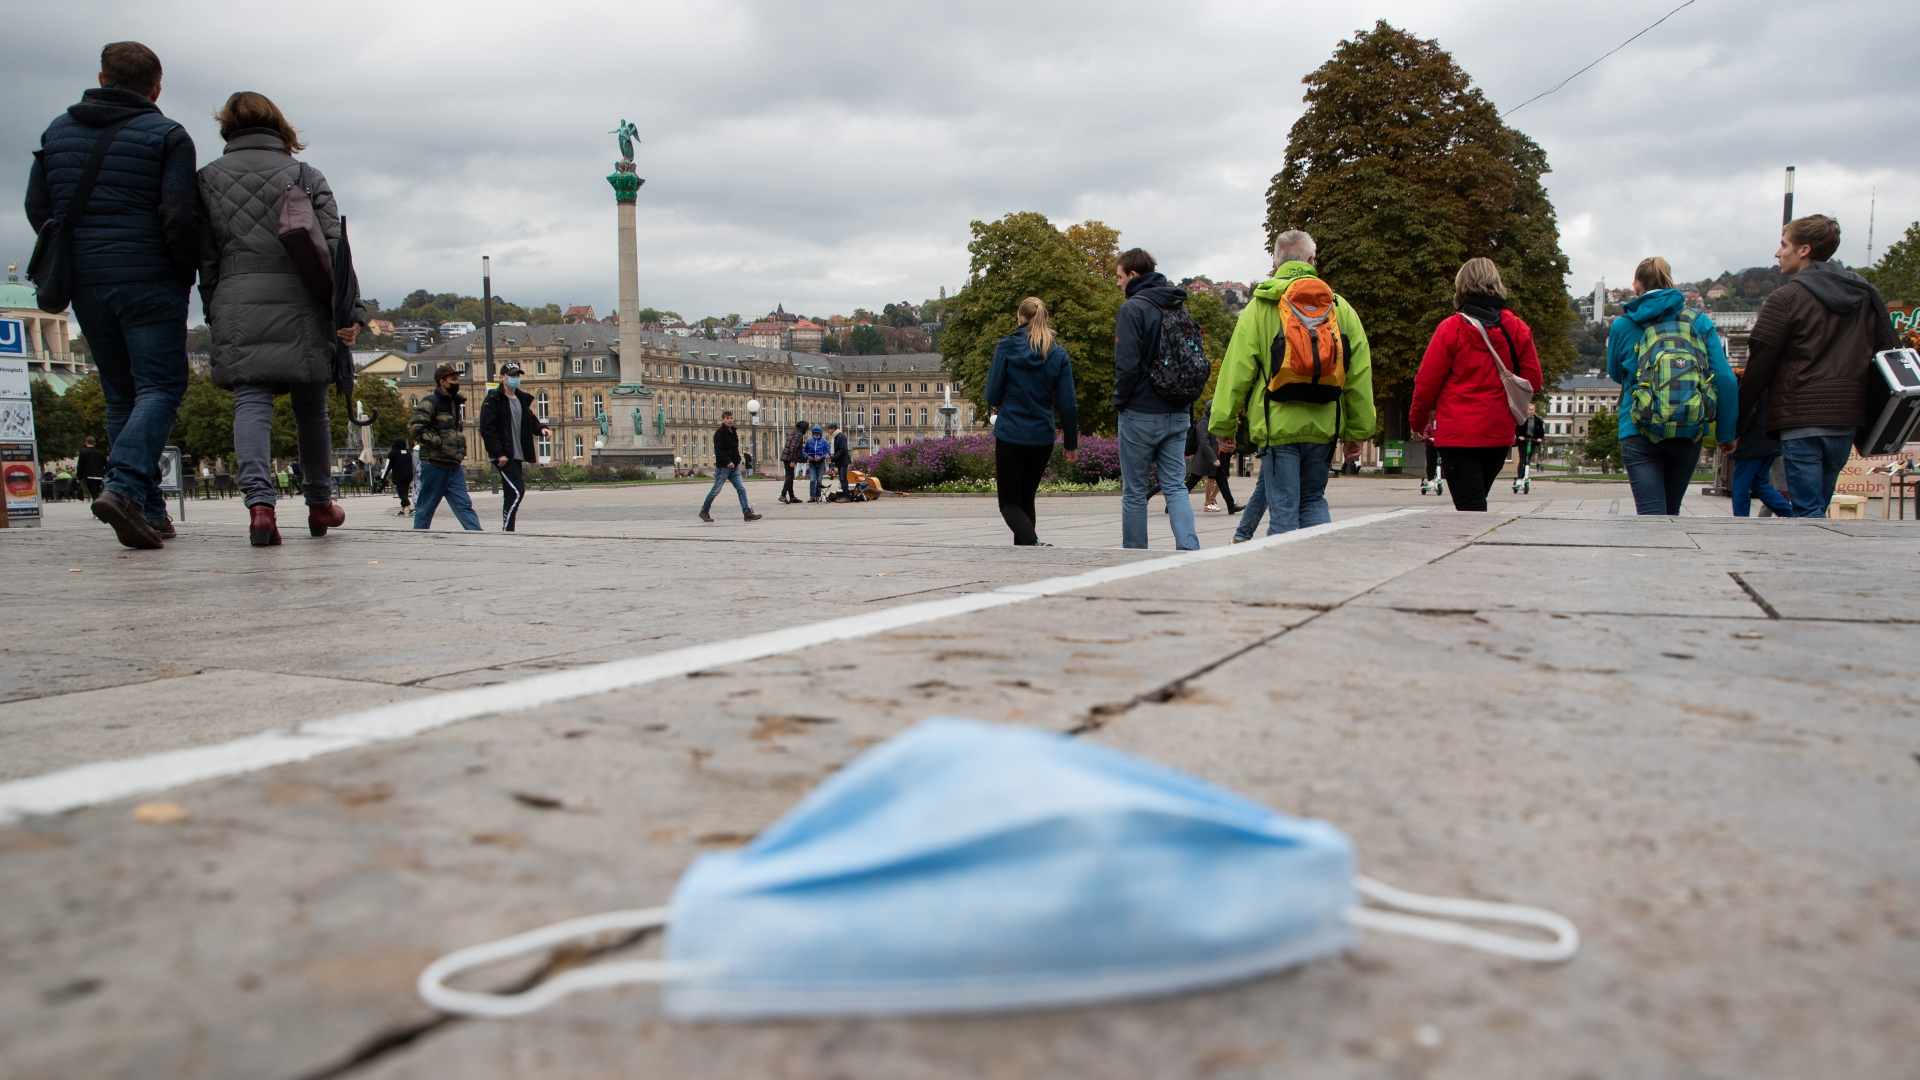 Passanten gehen über den Stuttgarter Schlossplatz, während auf dem Boden eine Mund-Nasen-Bedeckung liegt. | dpa